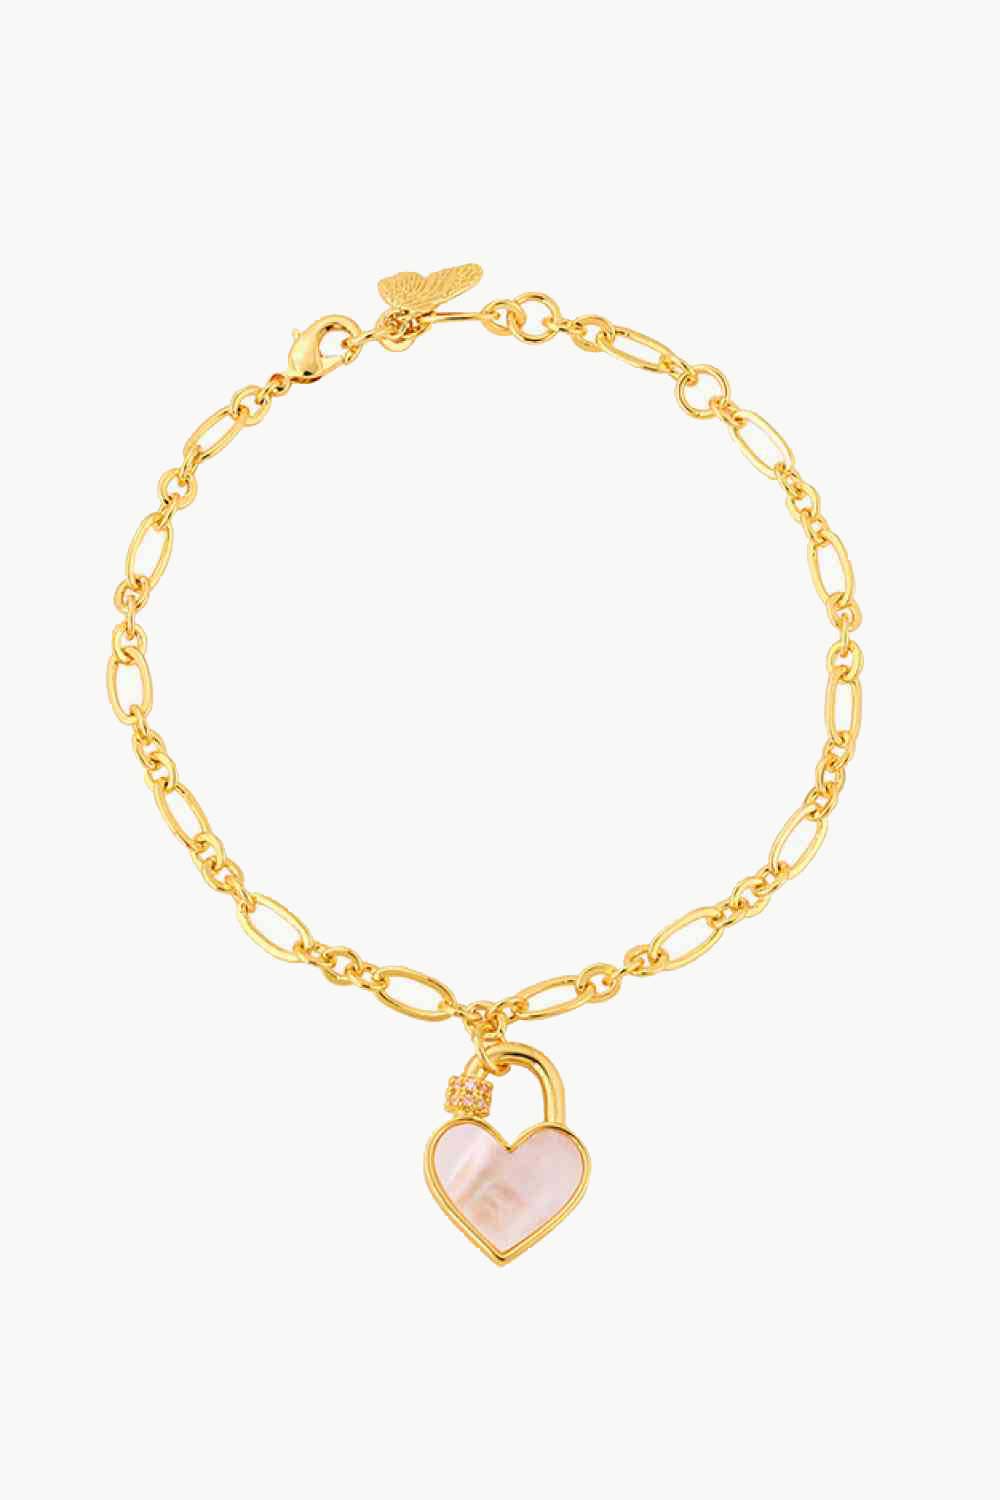 Heart Lock Charm Bracelet - Kawaii Stop - Bracelet, Bracelets, Ken, Ship From Overseas